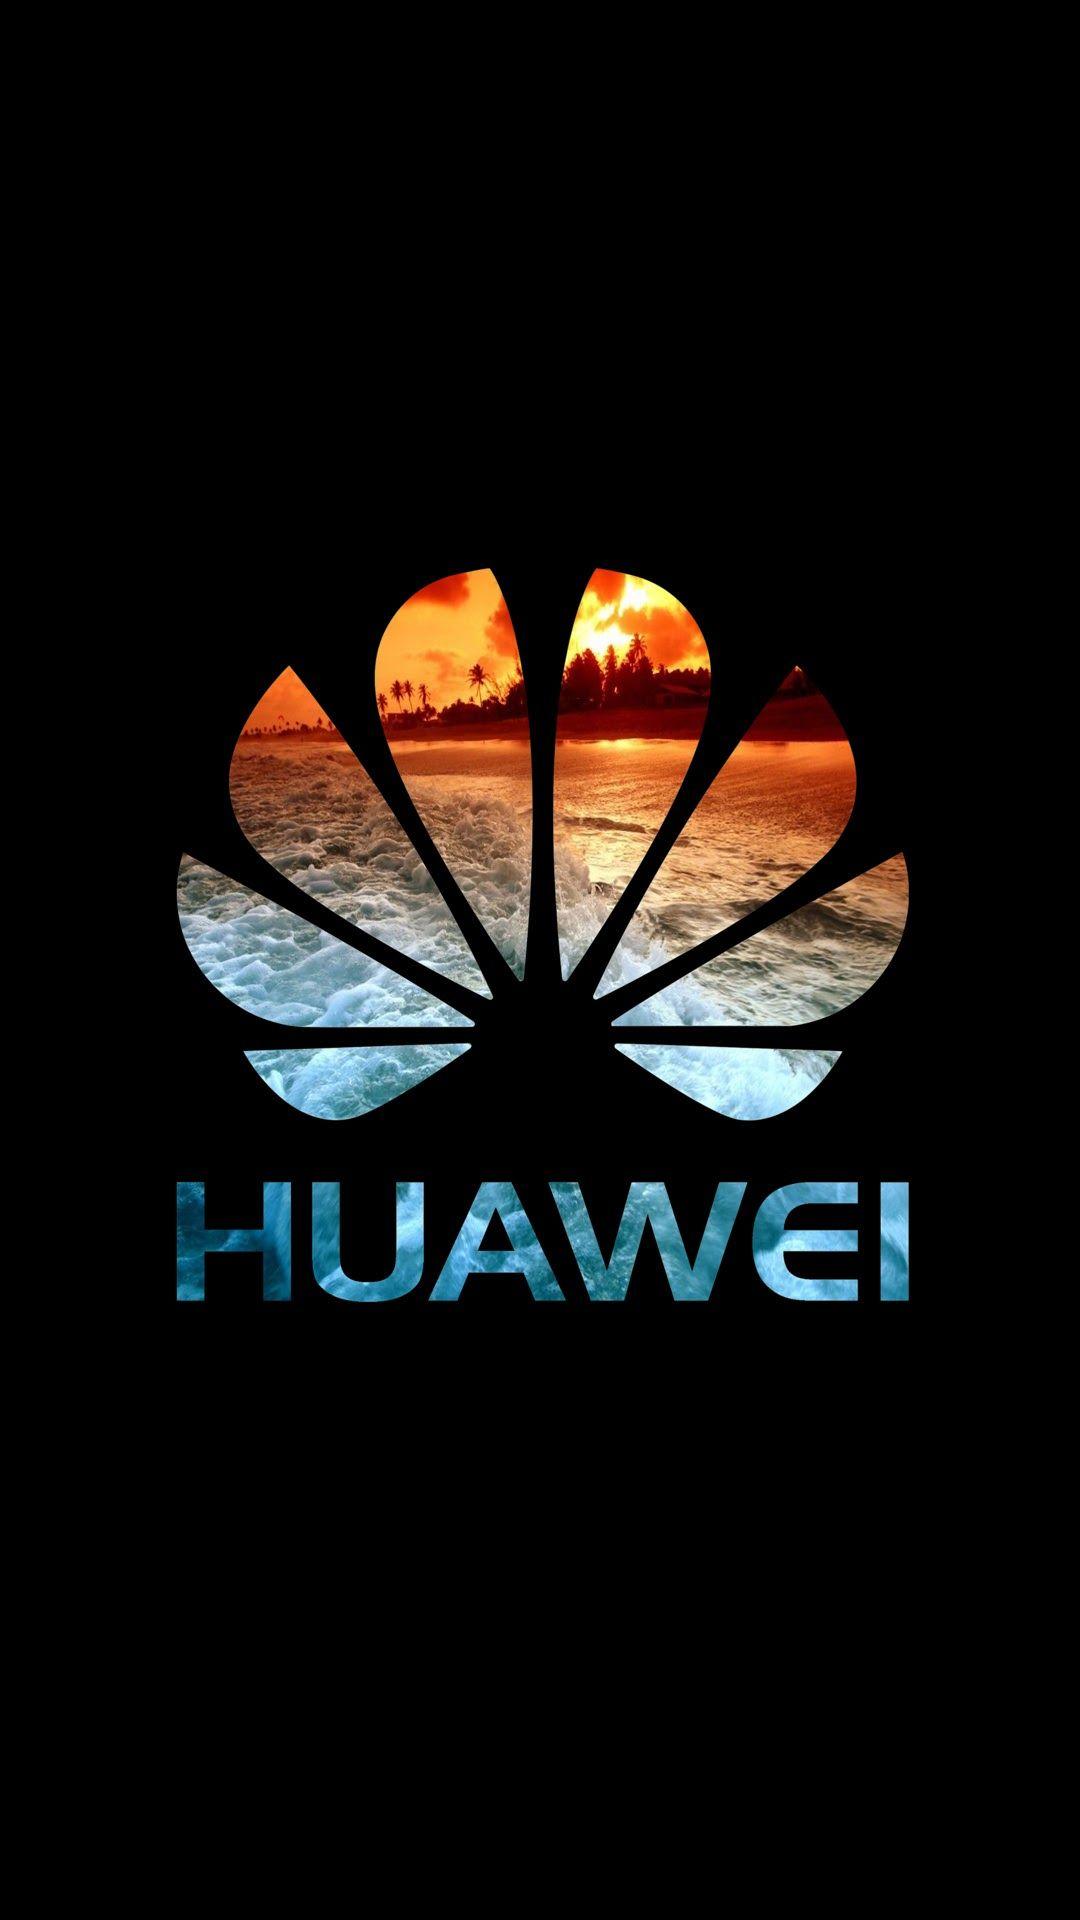 Huawei Logo - Huawei logo